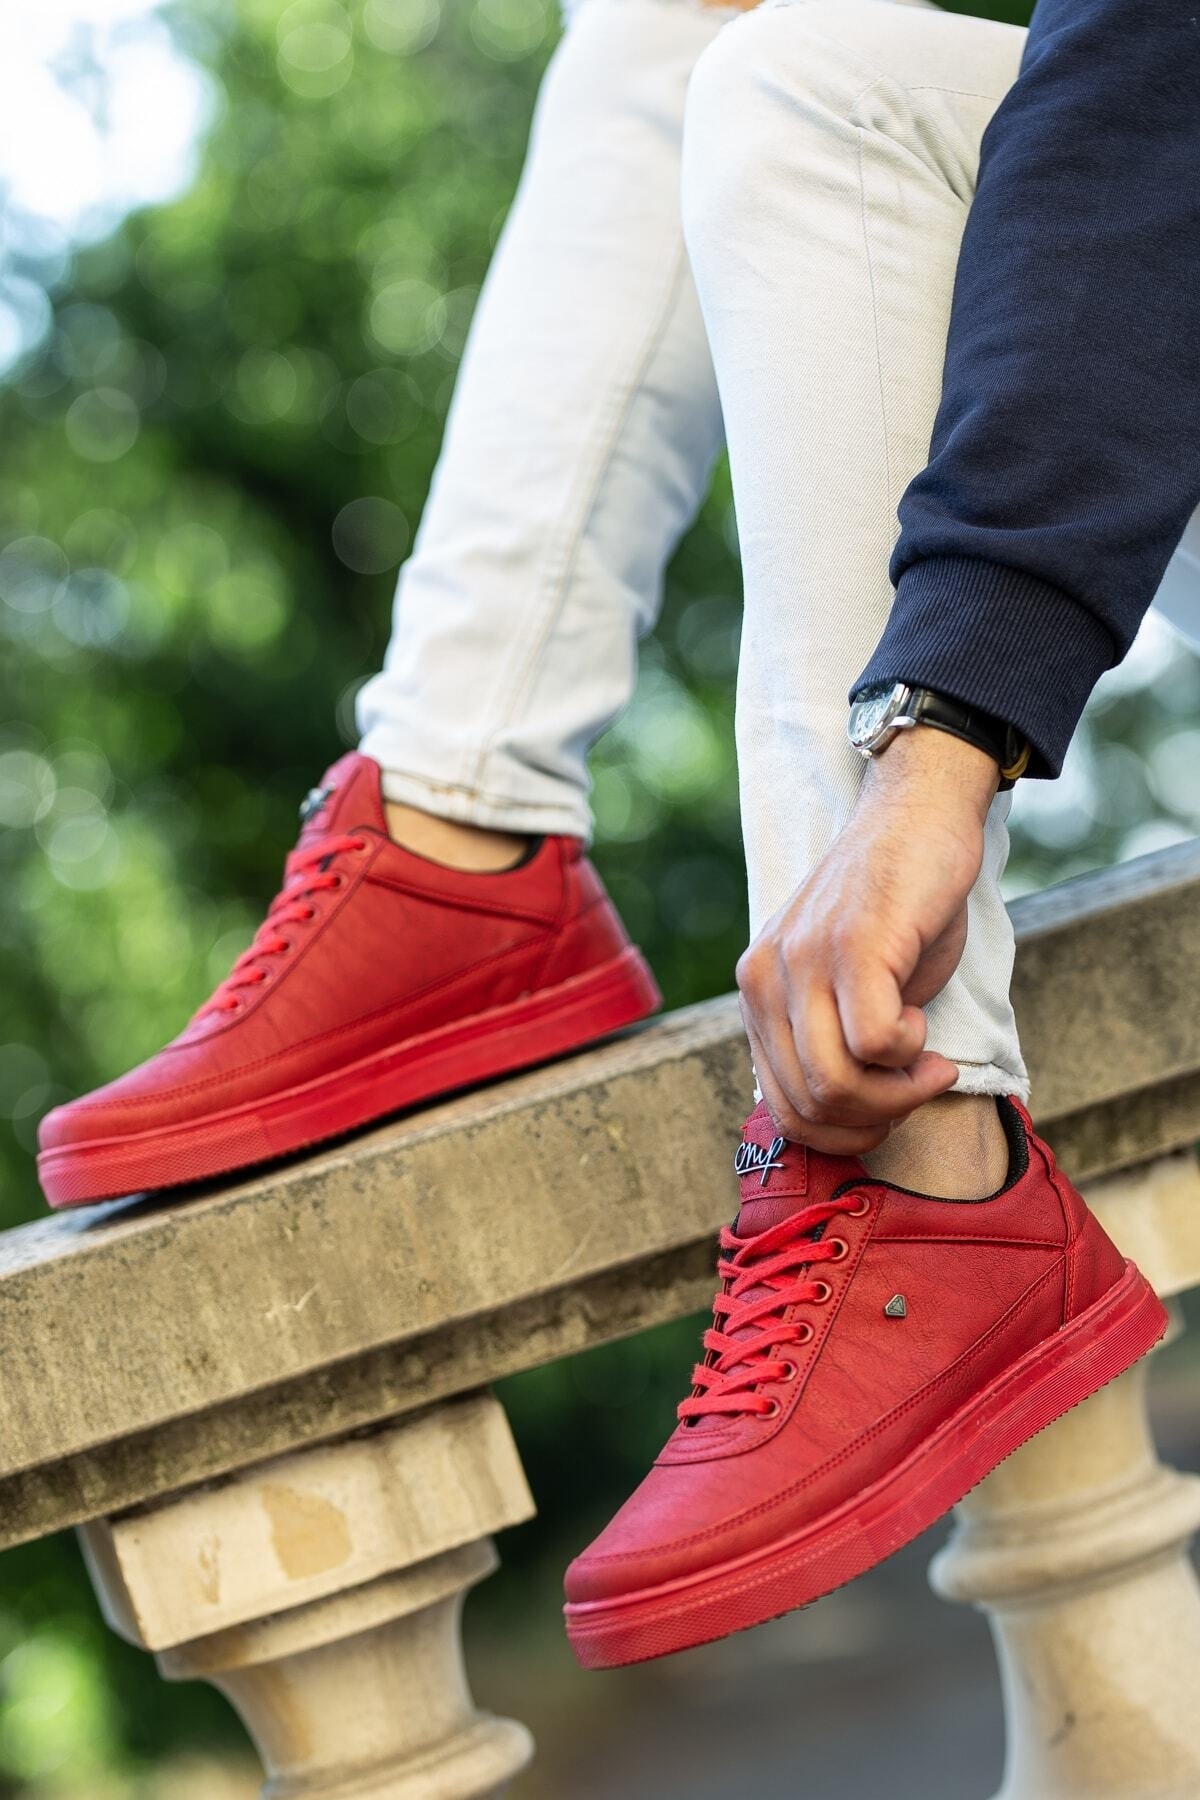 BOUIS Erkek Kırmızı Bağcıklı Deri Düz Rahat Taban Günlük Yumuşak İç Astarlı Şık Sneaker Spor Ayakkabı